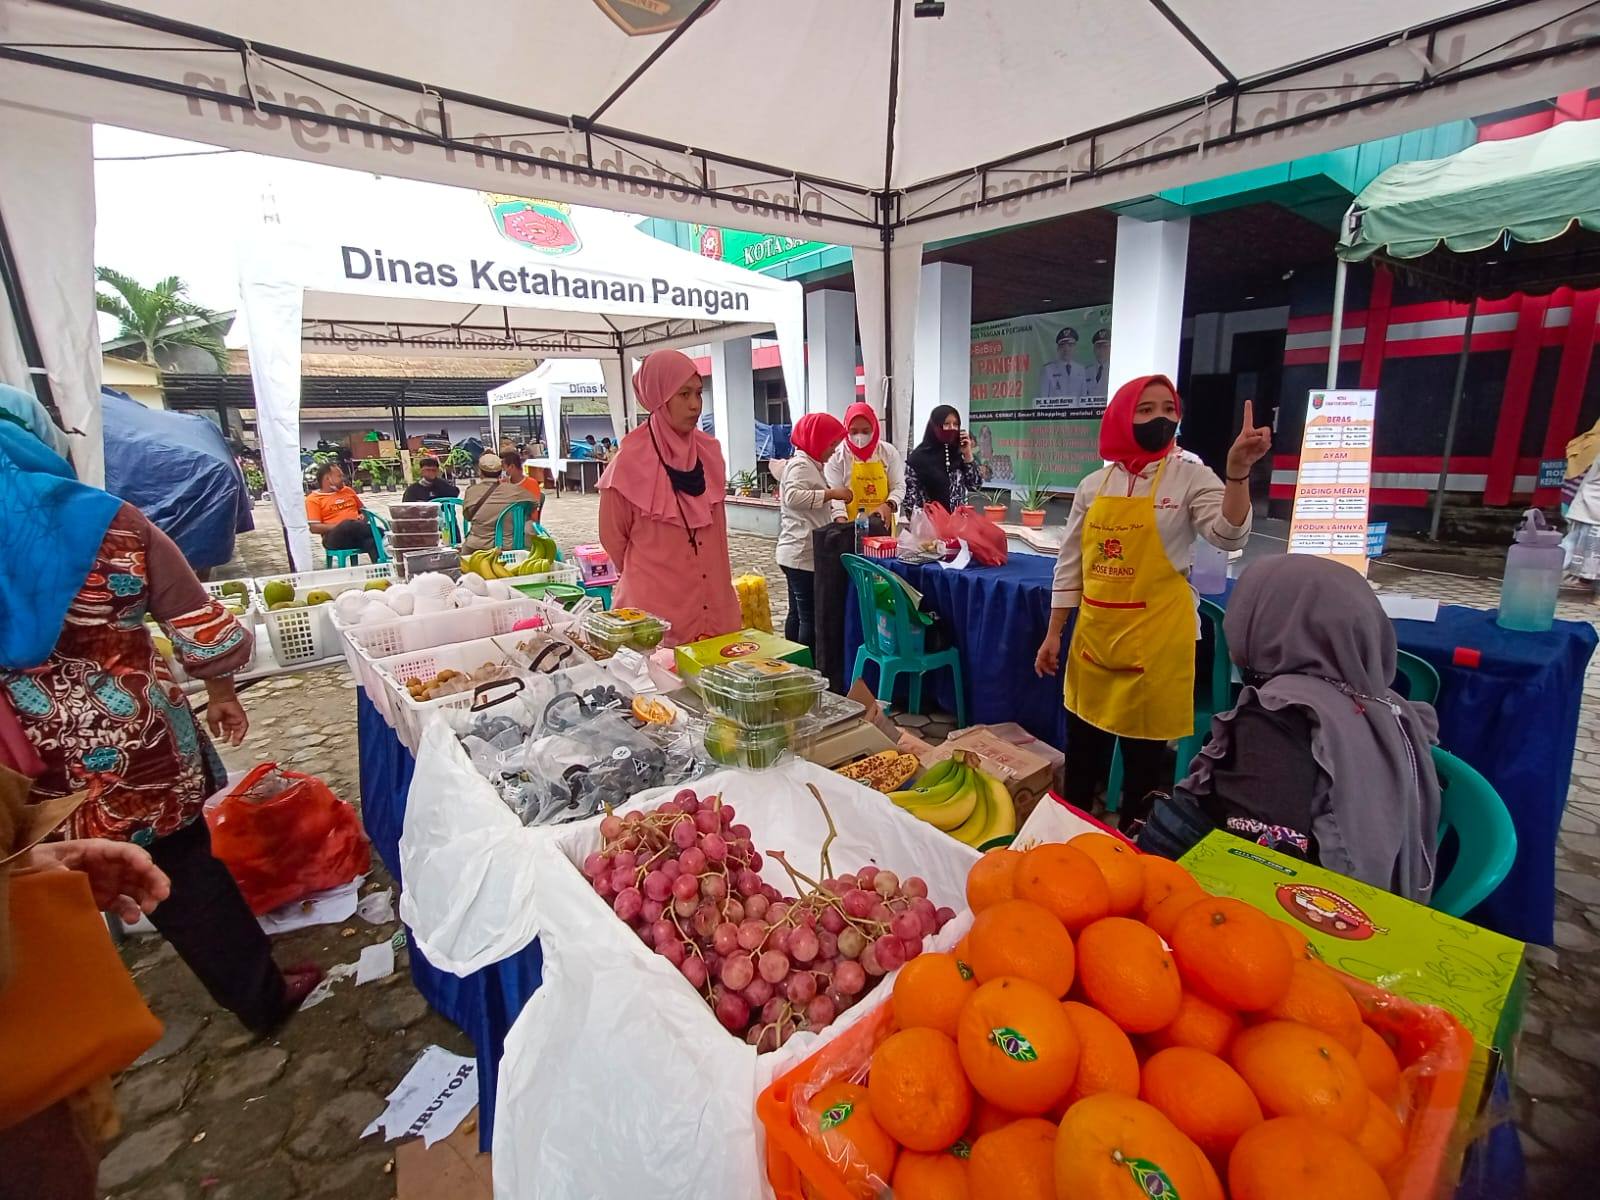 Jelang Ramadhan, Pemkot Samarinda Gelar Pasar Murah, Selisih Harga 2-3 Ribu